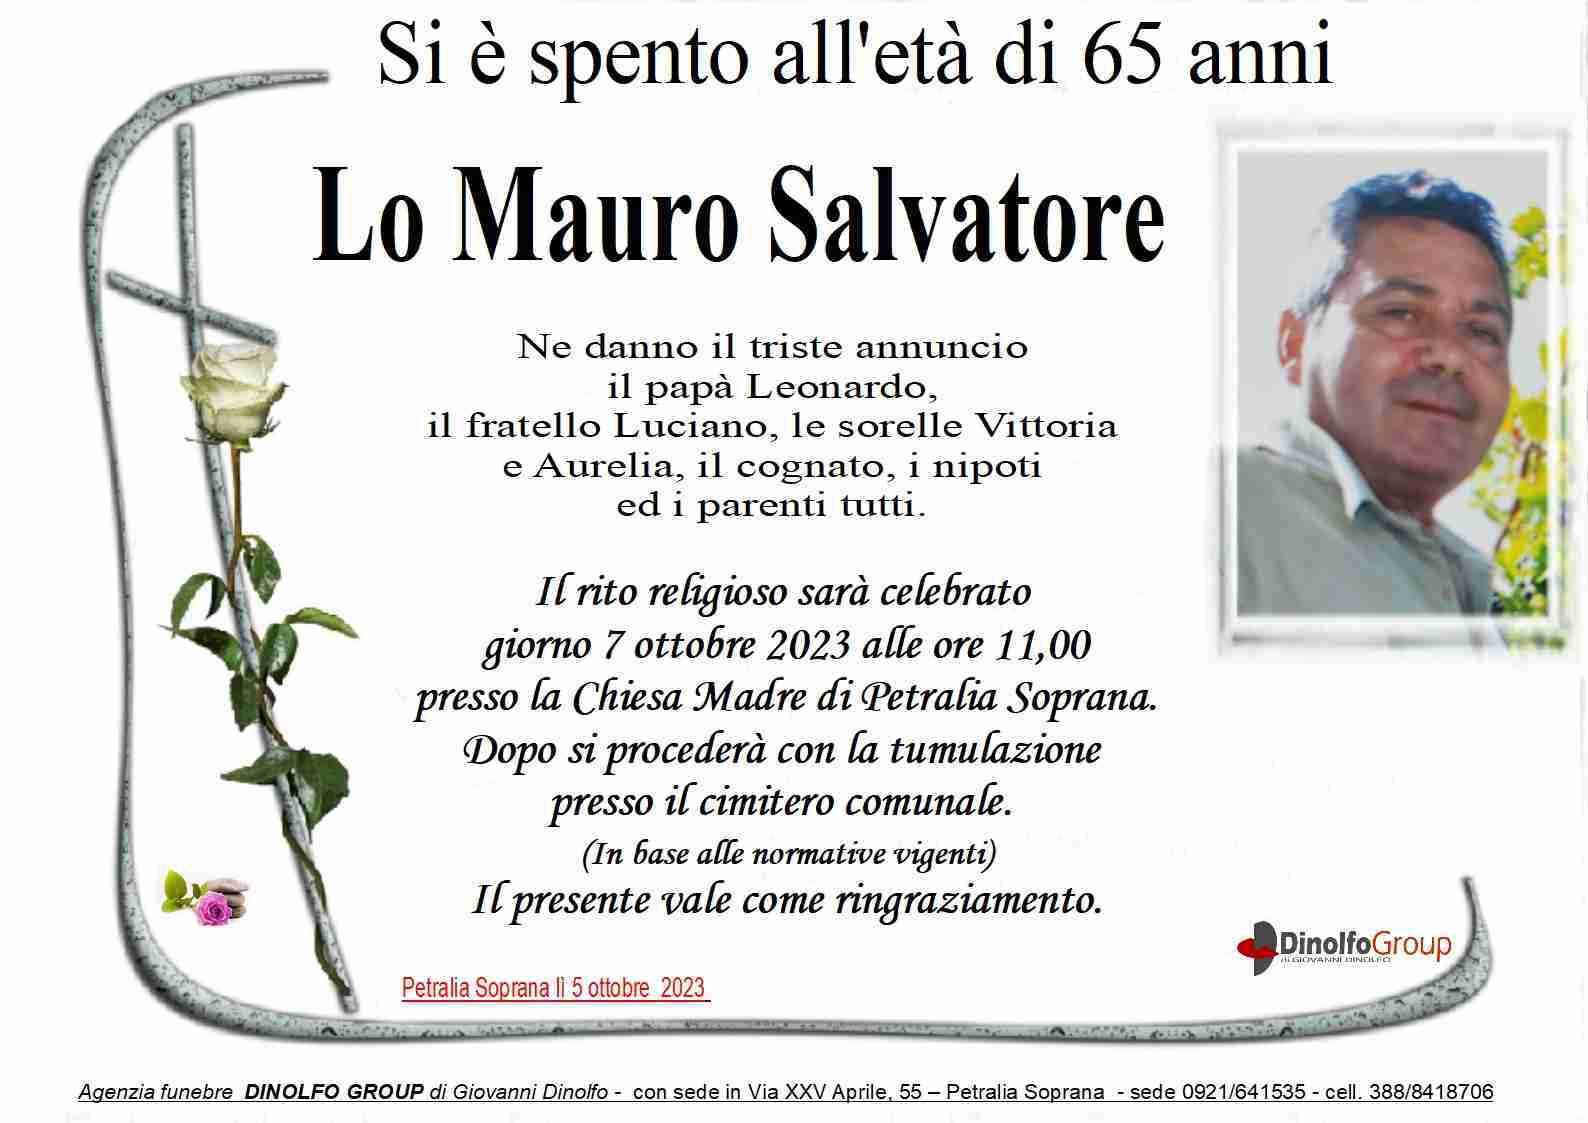 Salvatore Lo Mauro